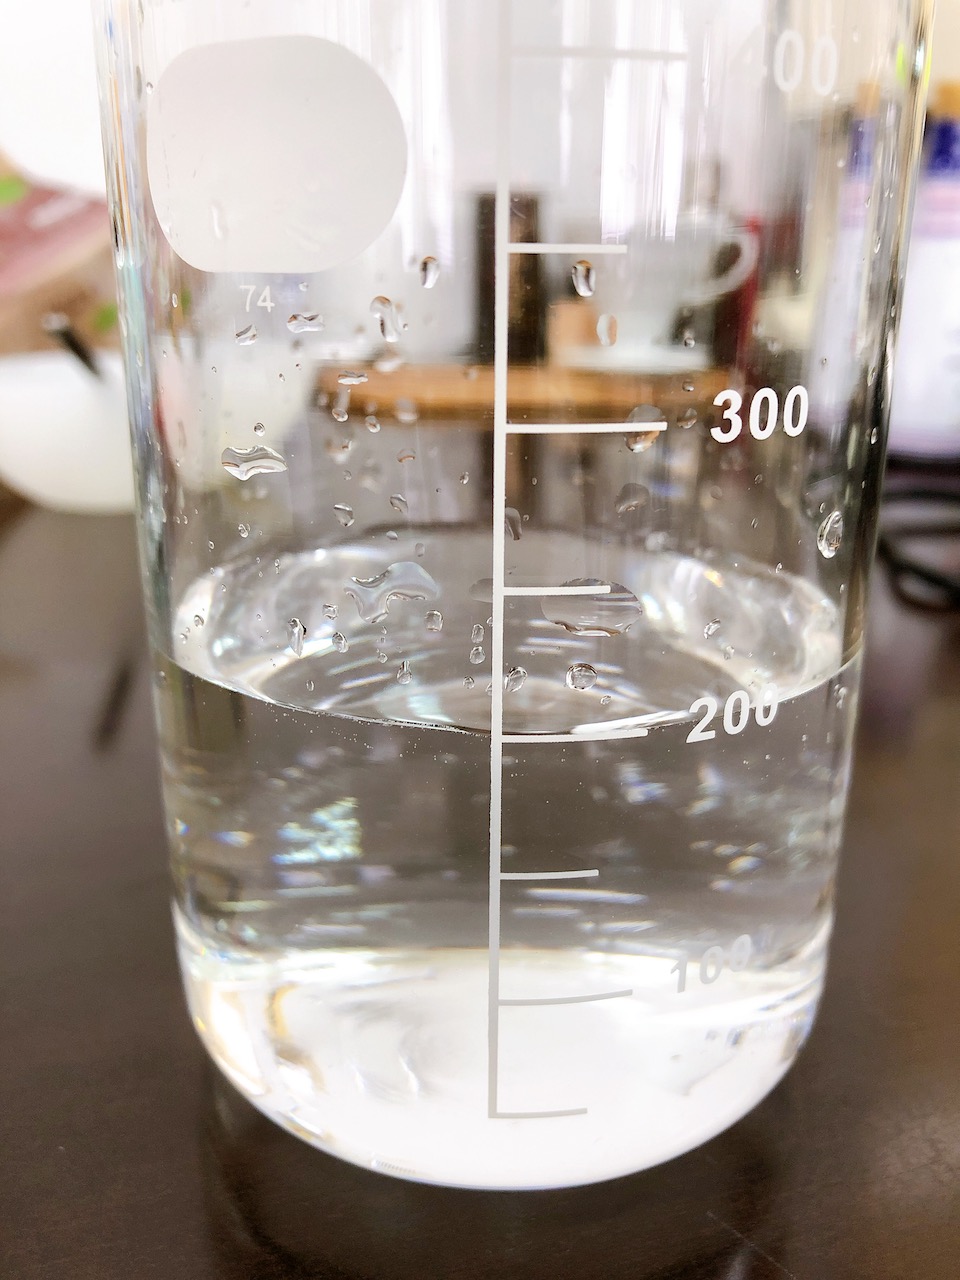 乳酸カルシウムを水に混ぜた画像